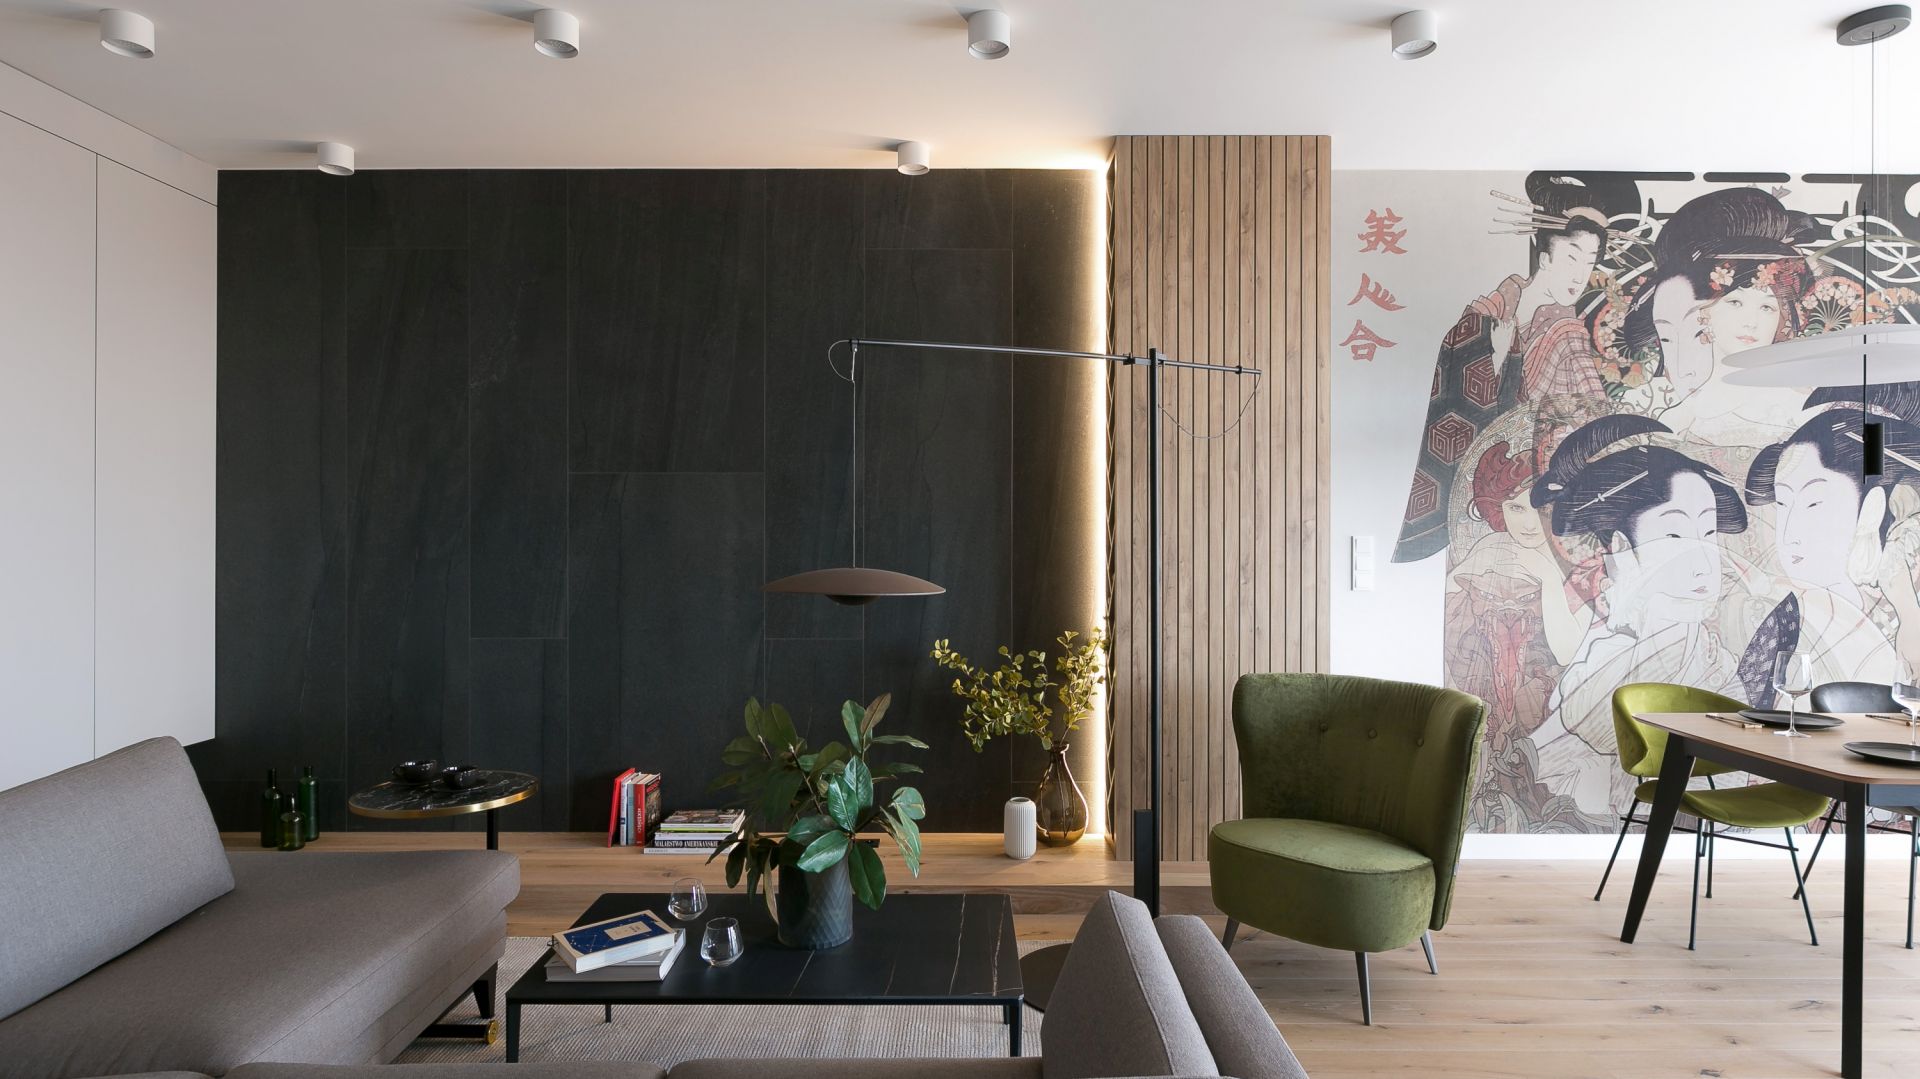 Mieszkanie inspirowane Japonią. Zobacz świetnie zaprojektowane 55 mkw w Krakowie